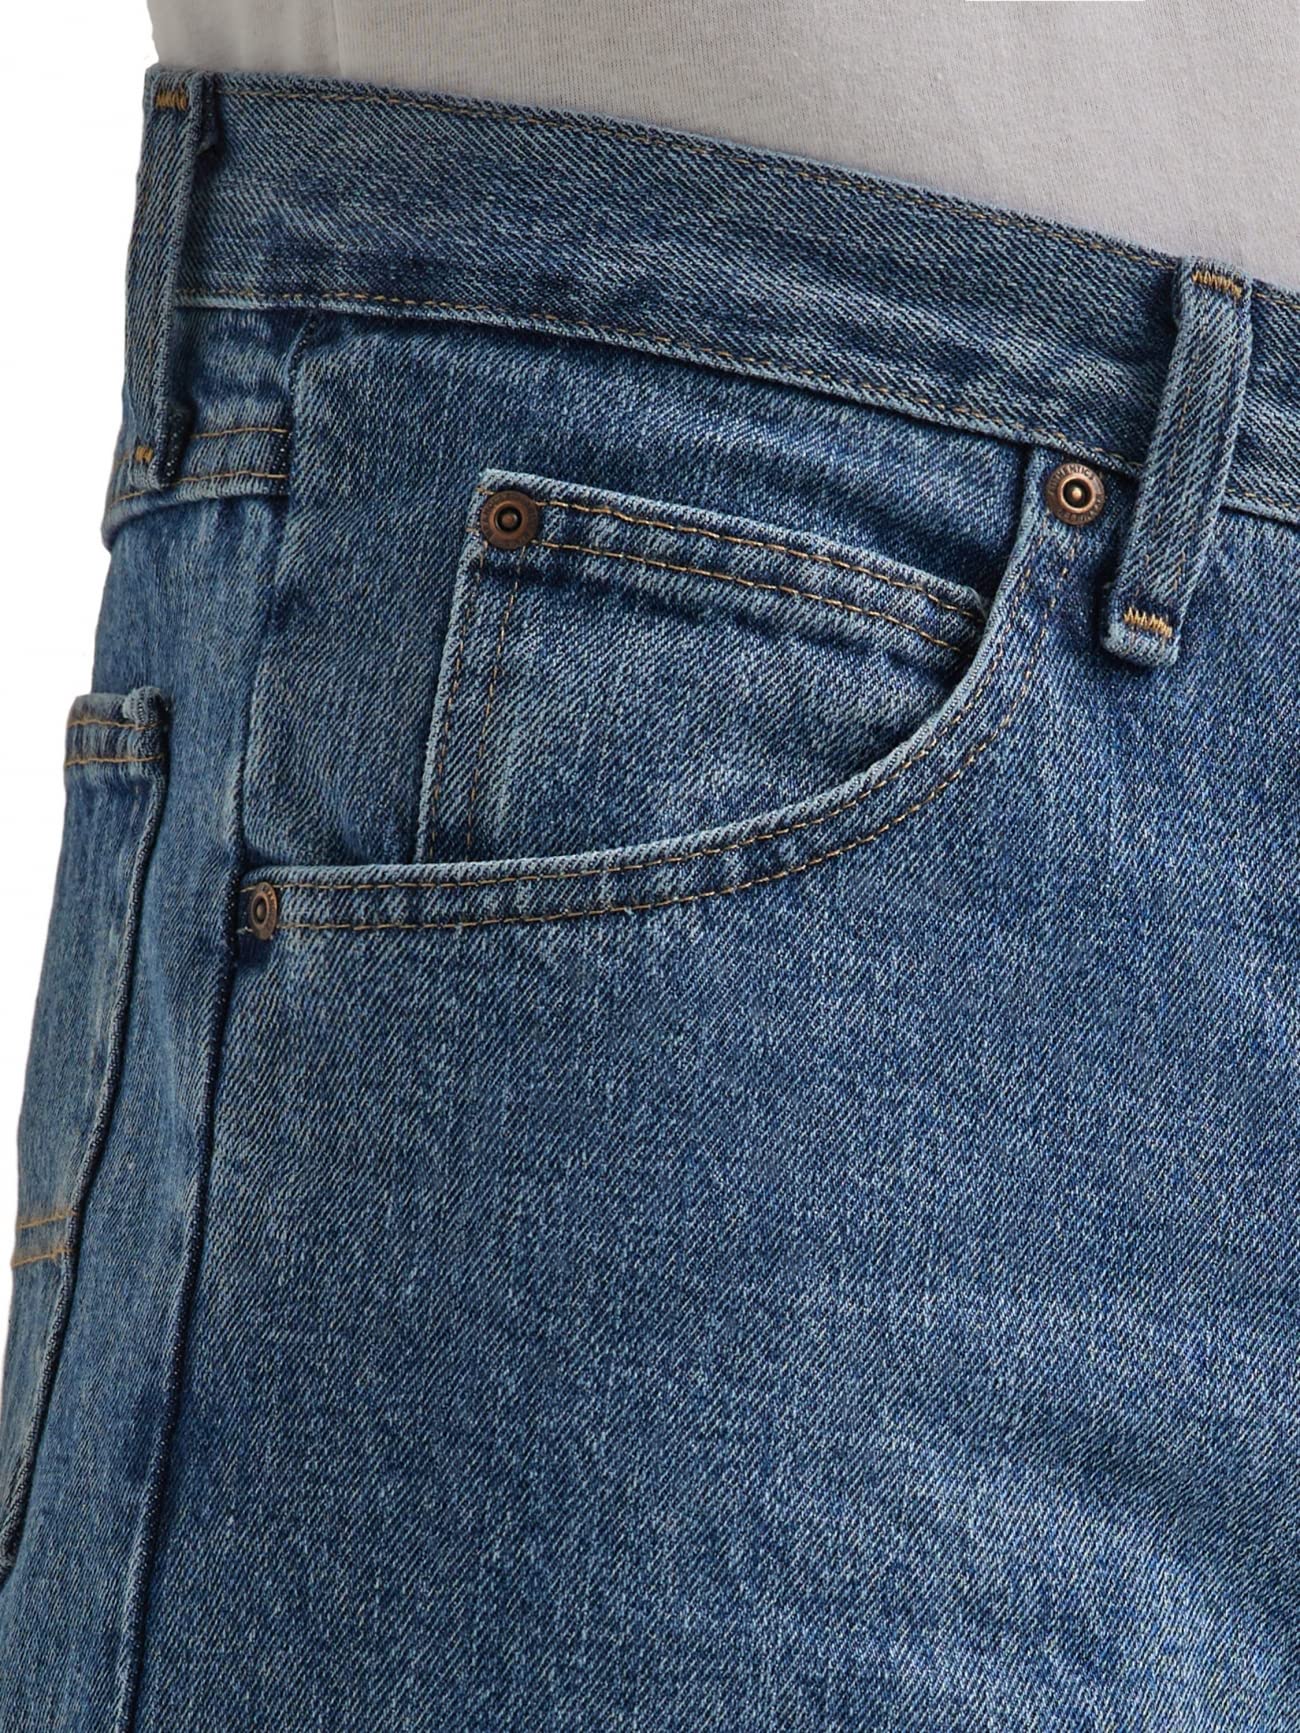 Wrangler Authentics Men's Classic 5-Pocket Regular Fit Cotton Jean, Vintage Blue Grey, 35W x 30L